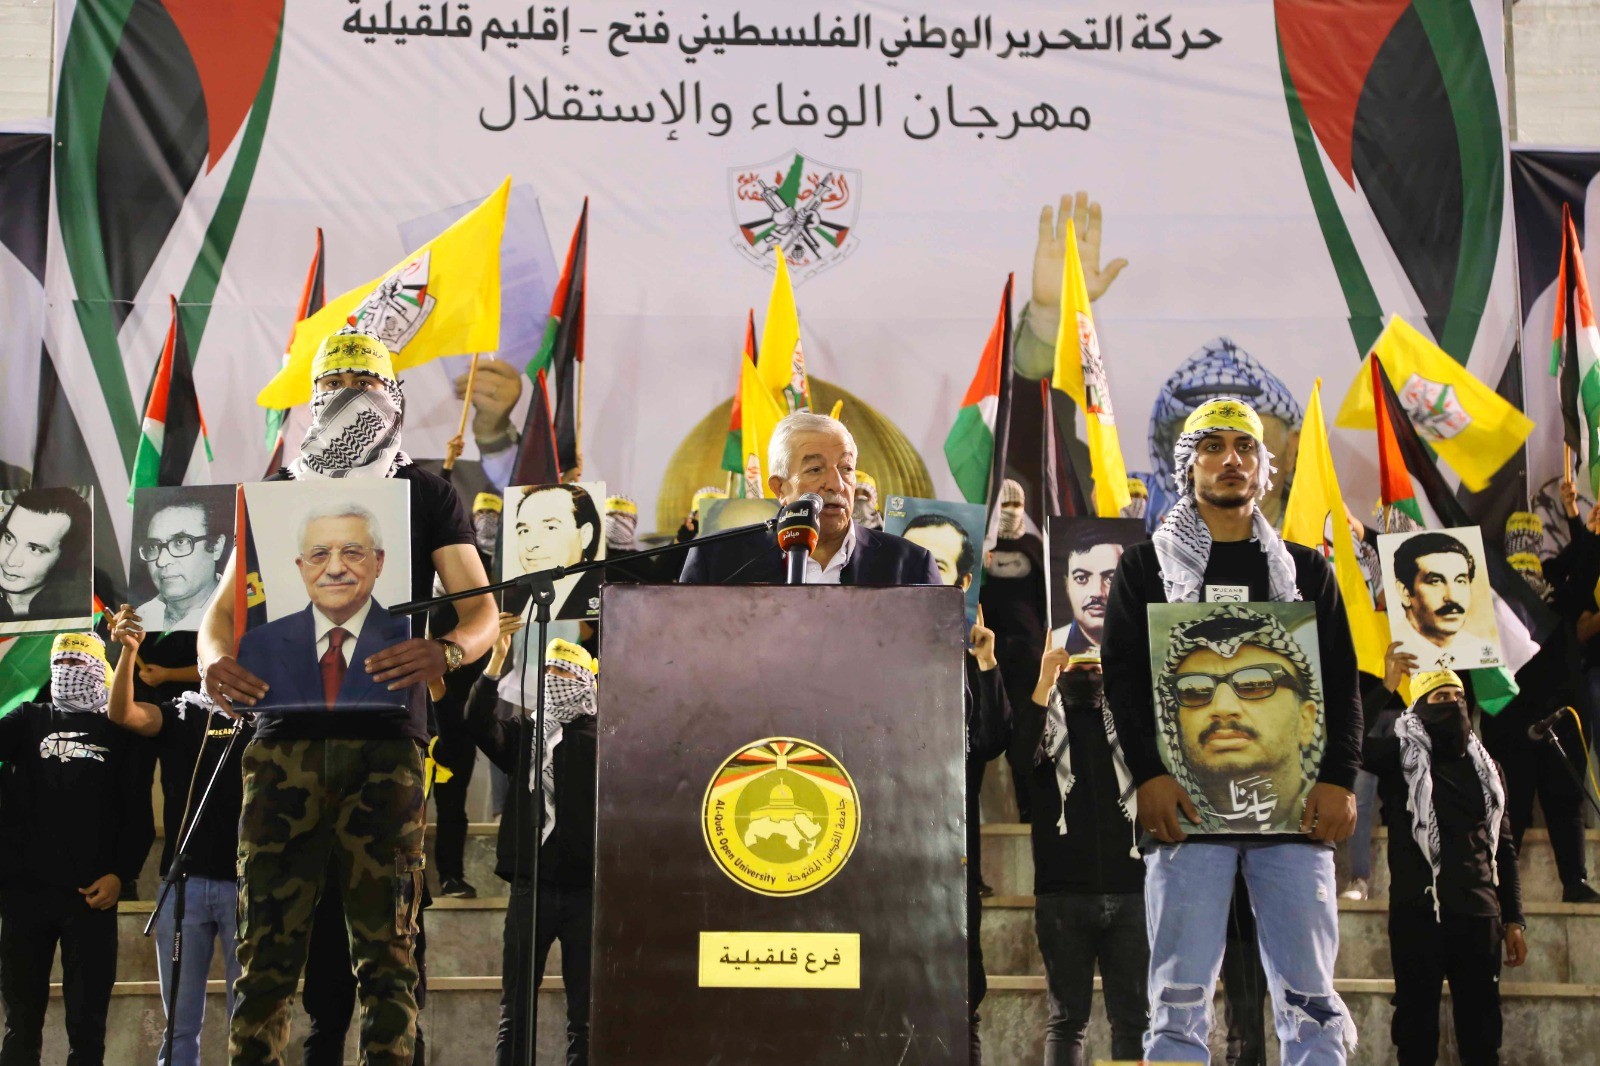 حركة فتح تحيي الذكرى الثامنة عشر لاستشهاد الرئيس عرفات 6.jpg